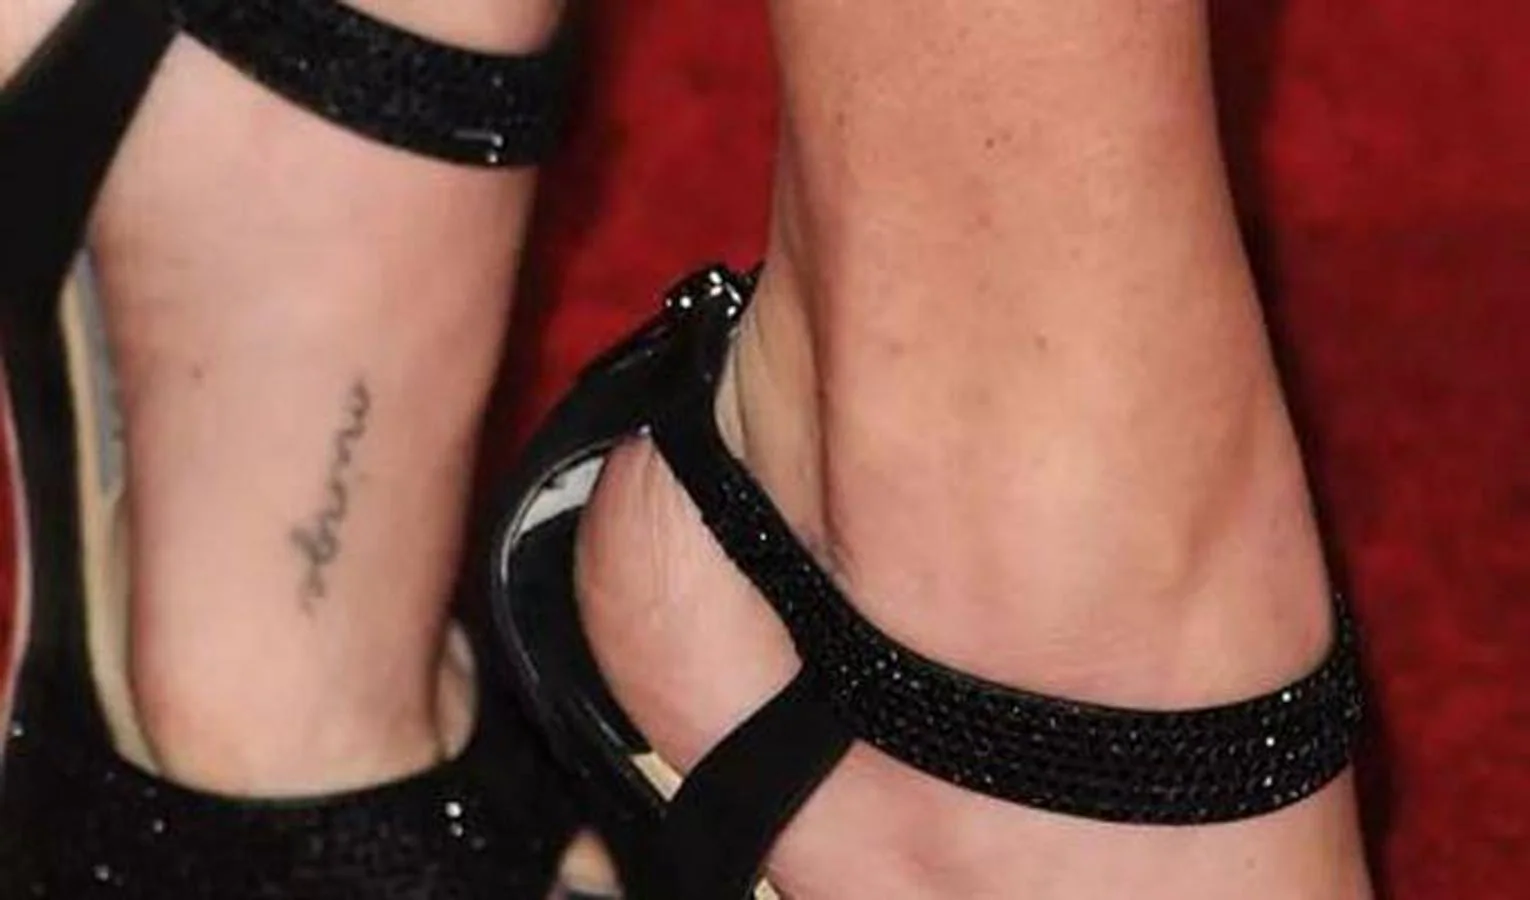 Amanda Seyfried. La actriz estadounidense se atrevió con un pequeño tatuaje en el piel: «Minge», cuya traducción literal sería «vello púbico». Nadie se explica el motivo de este misterioso mensaje